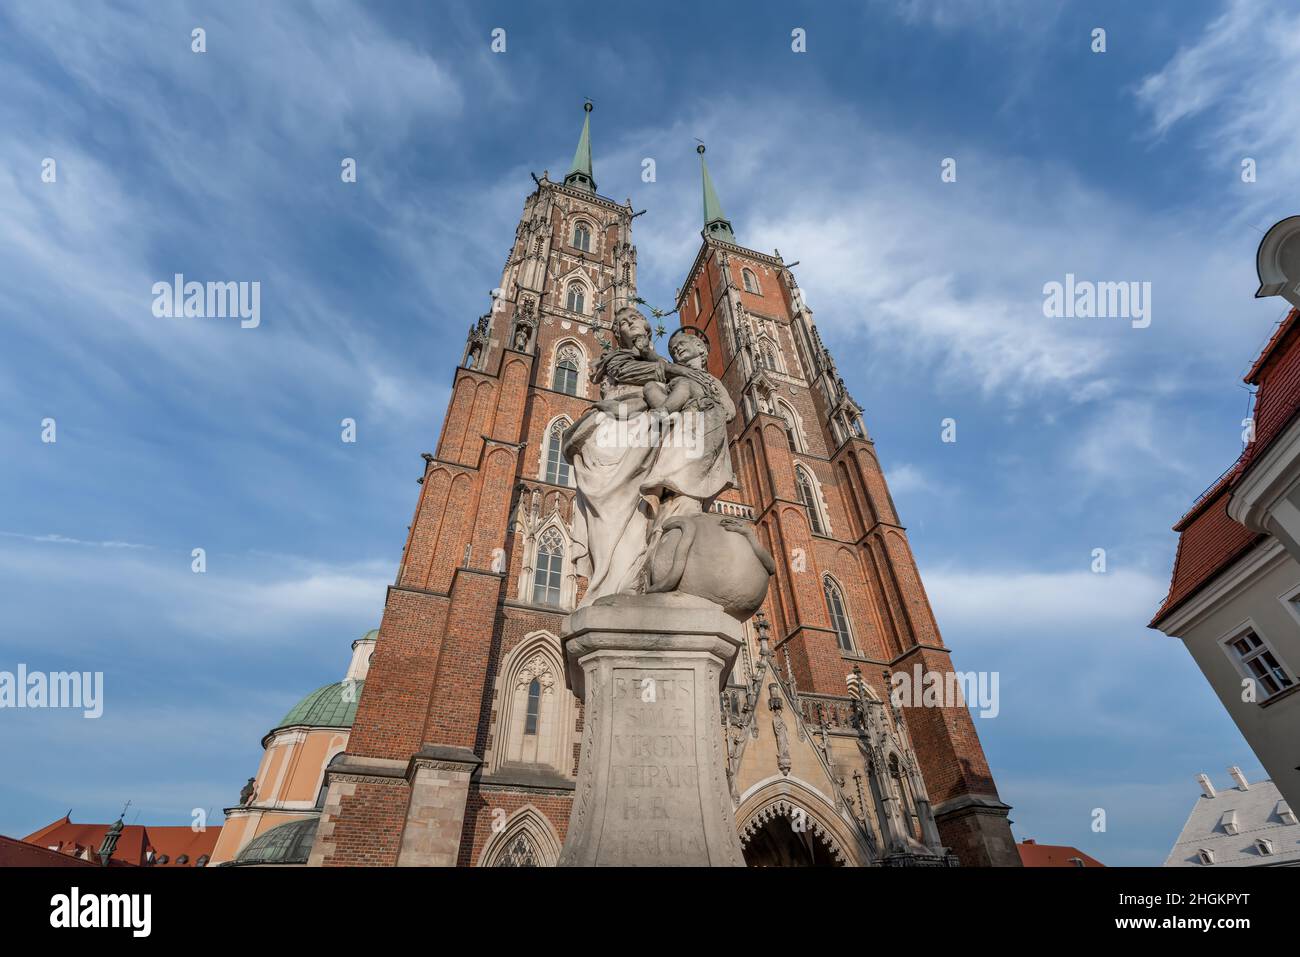 Statue de notre-Dame mère de Dieu et cathédrale Saint-Jean-Baptiste à l'île de la Cathédrale (Ostrow Tumski) - Wroclaw, Pologne Banque D'Images